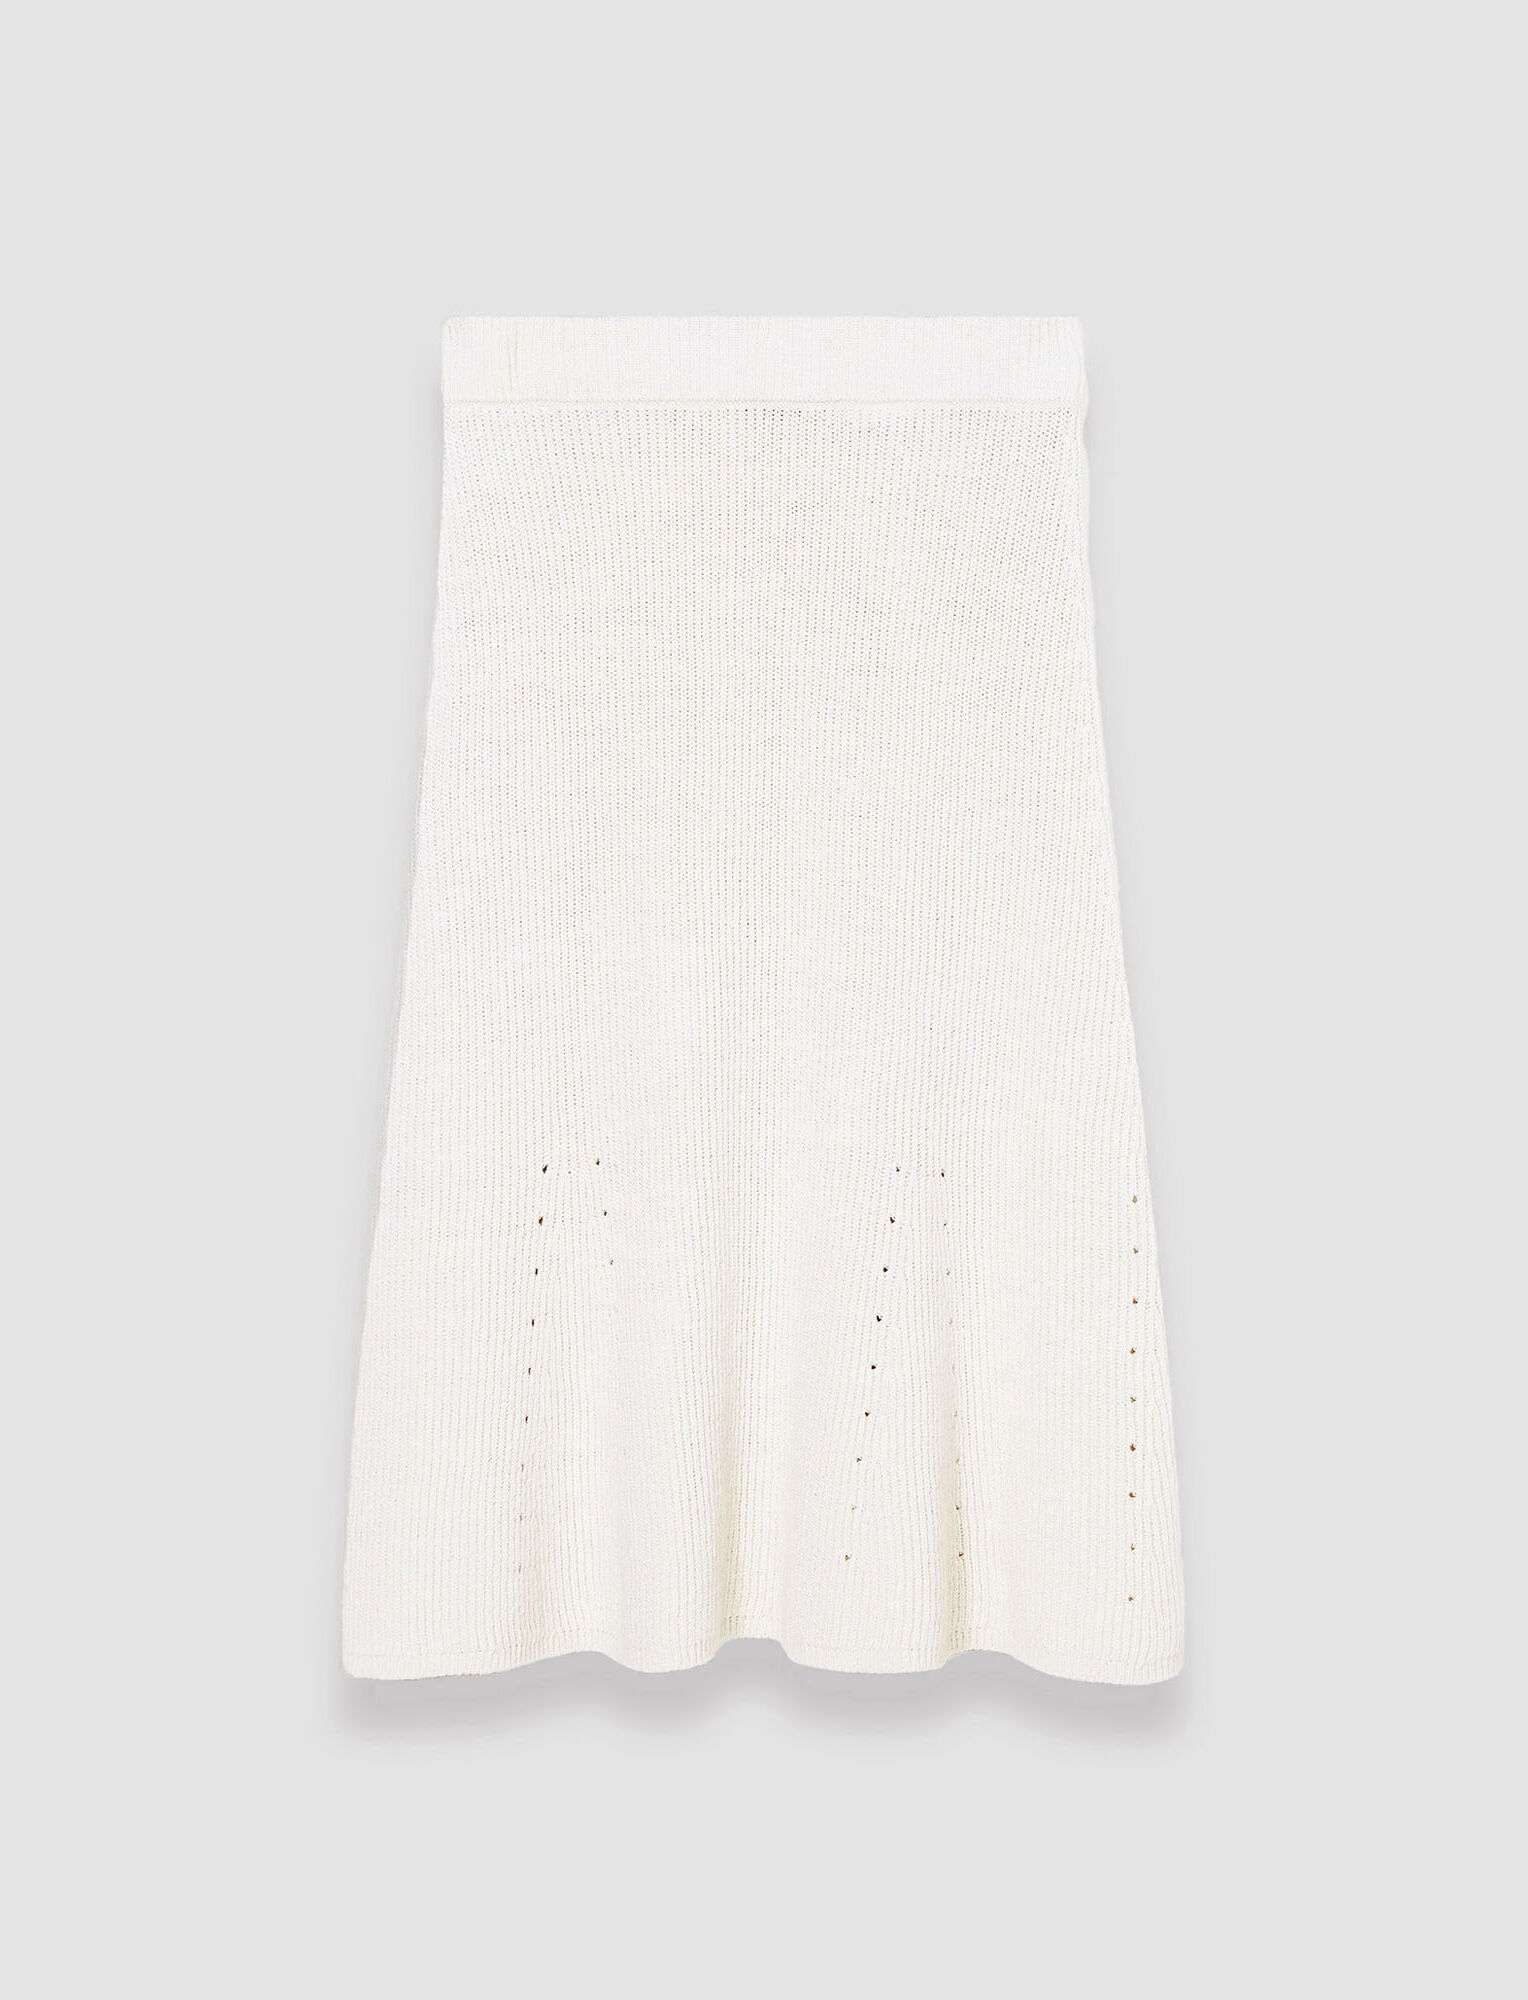 Joseph, Linen Cotton Knitted Skirt, in Ivory